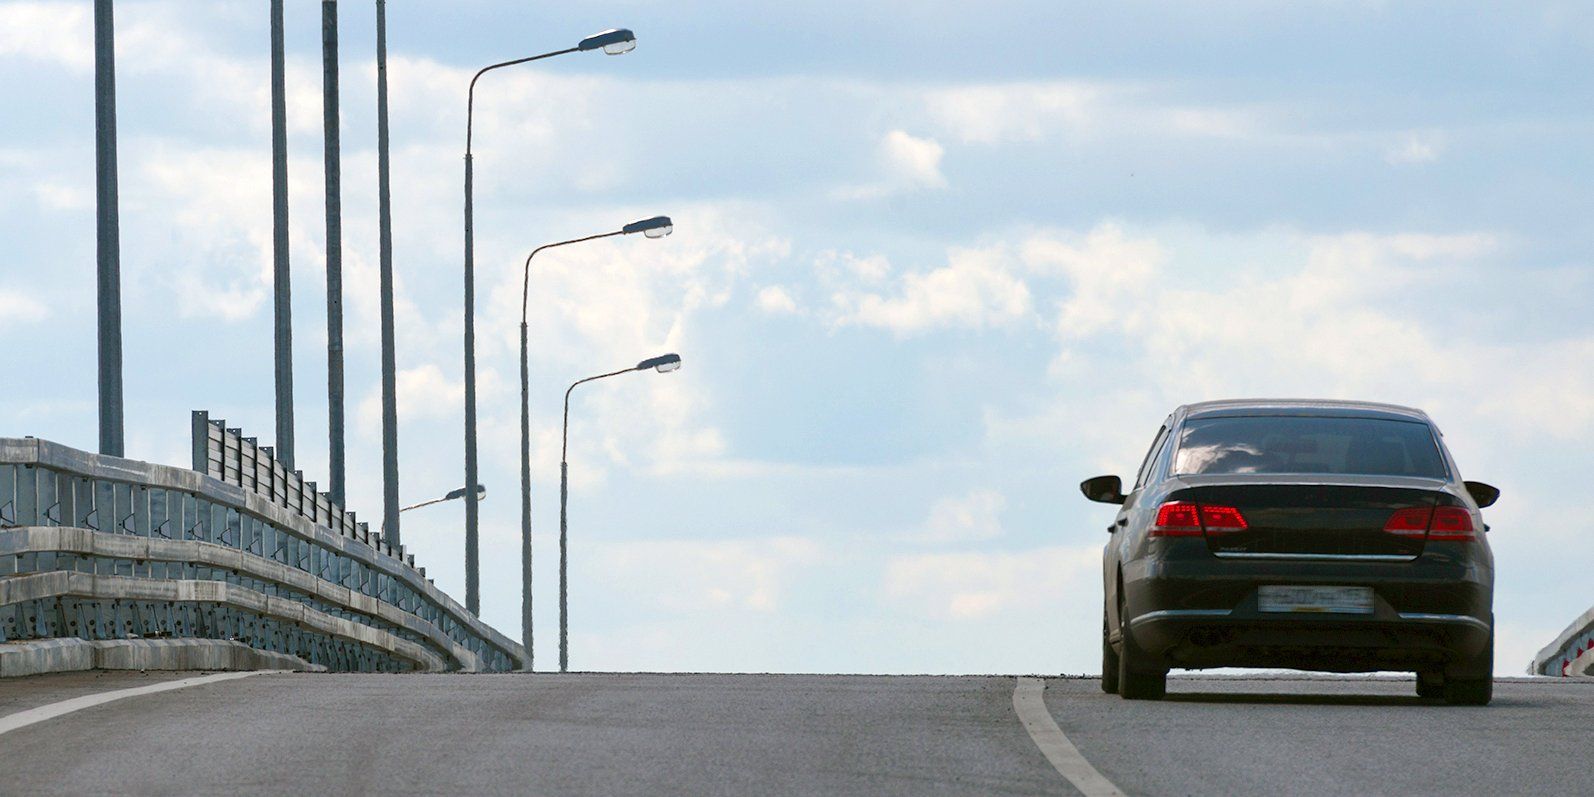 Жители двух районов на юге Москвы получат новые дороги